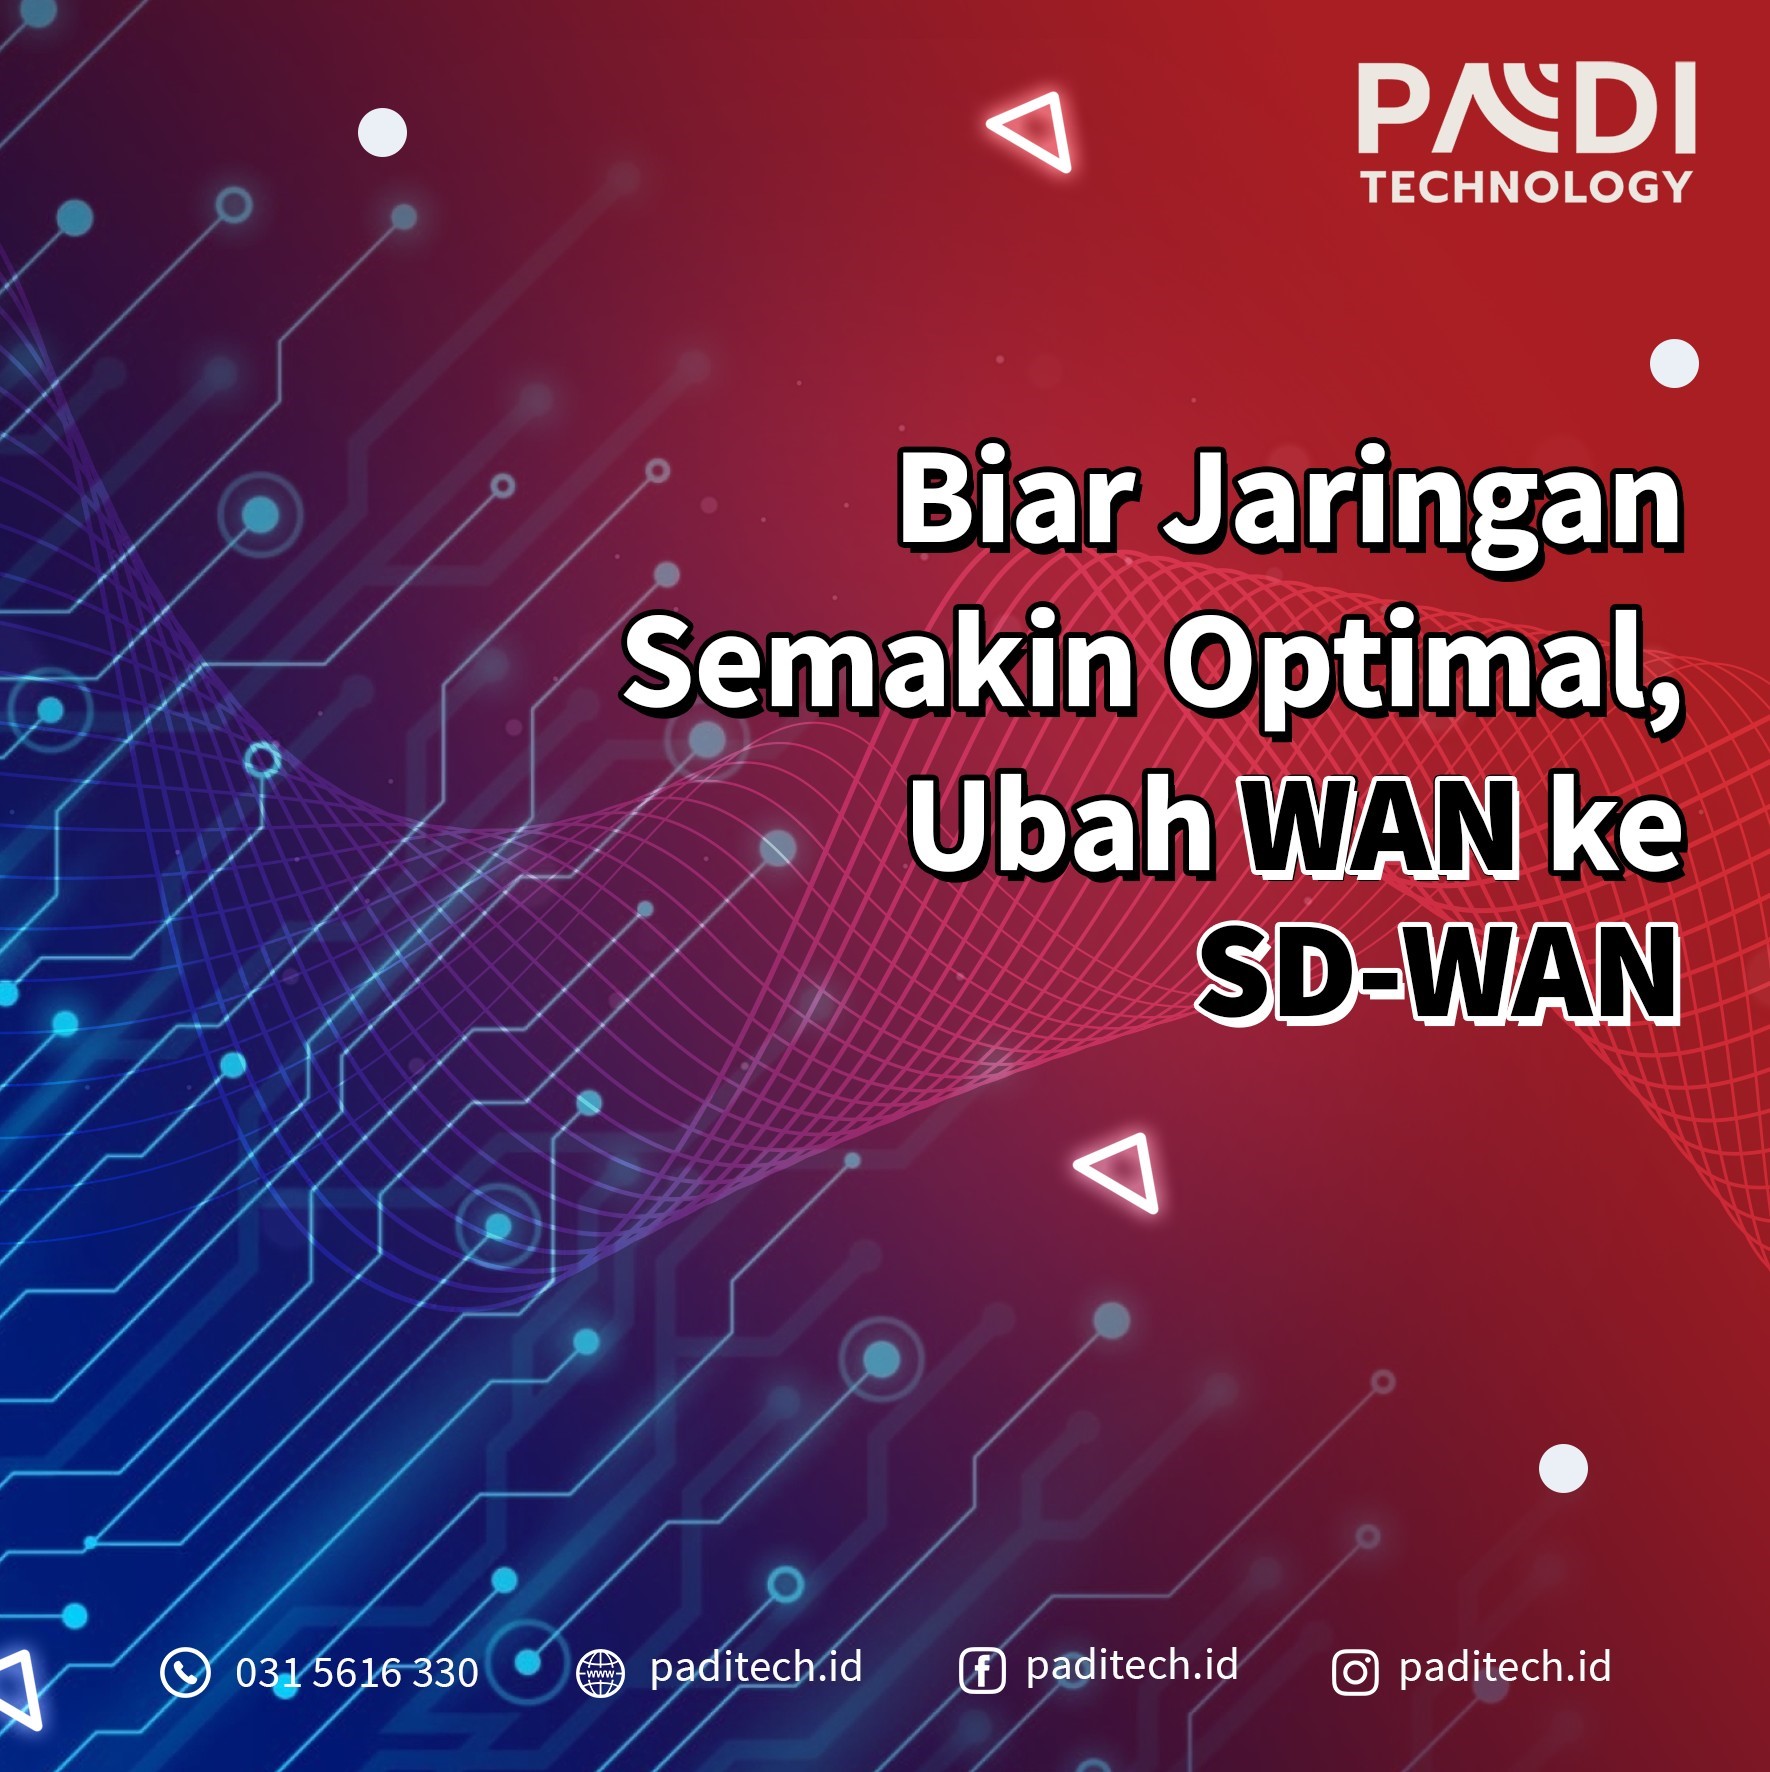 Kini saatnya ubah WAN ke SD-WAN! Biar jaringan Anda semakin optimal bersama layanan Managed SD-WAN dari Padi Custom Solution by Padi Technology.